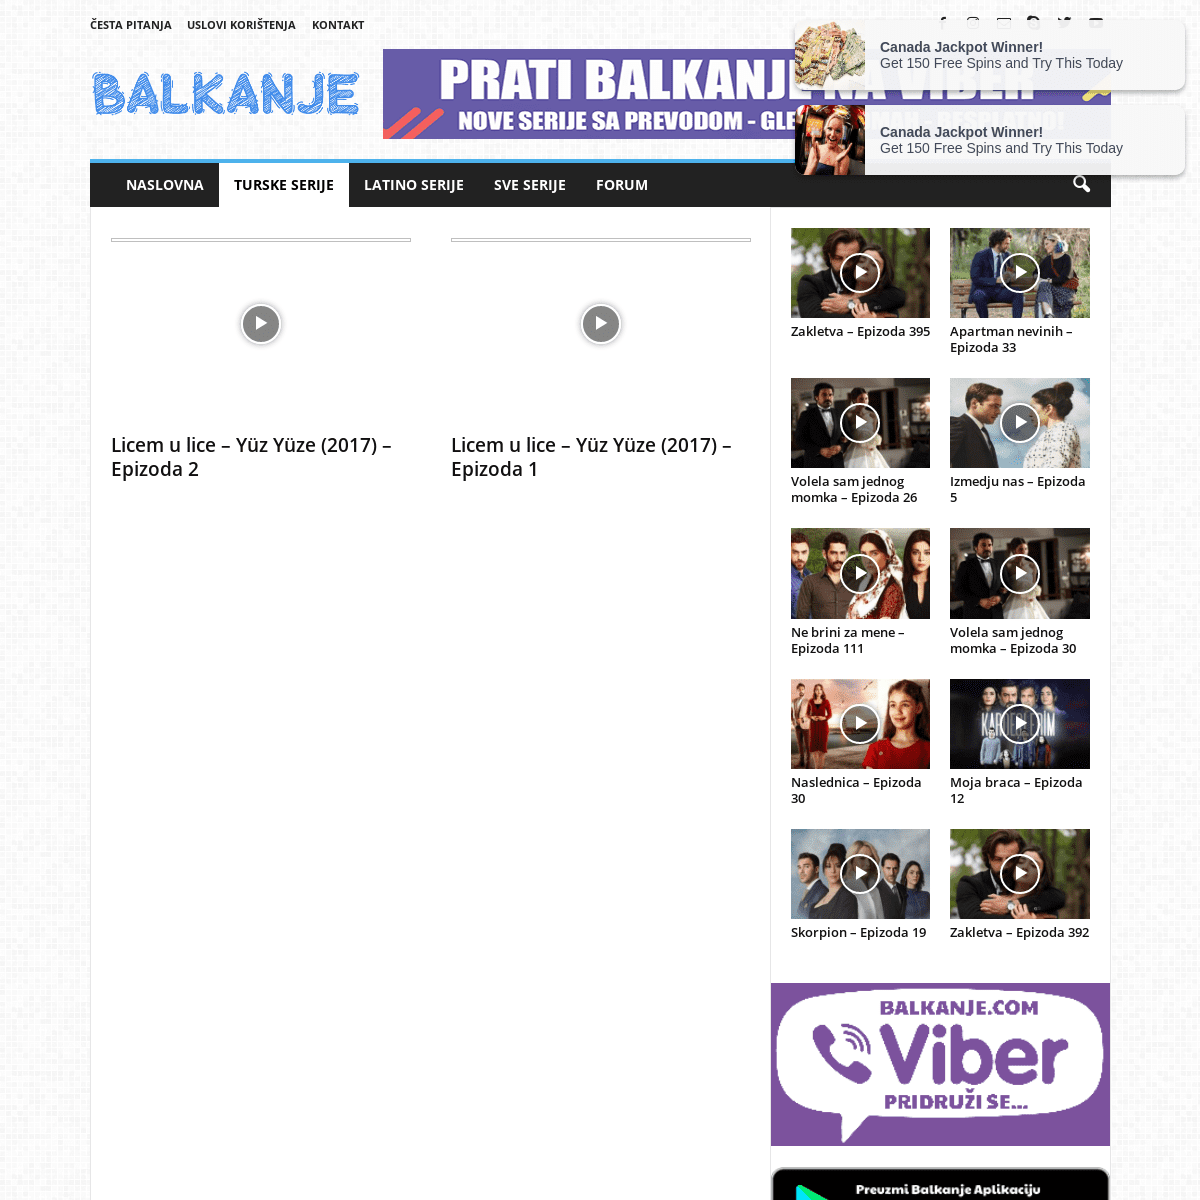 A complete backup of https://balkanje.com/turske-serije/licem-u-lice-2017/